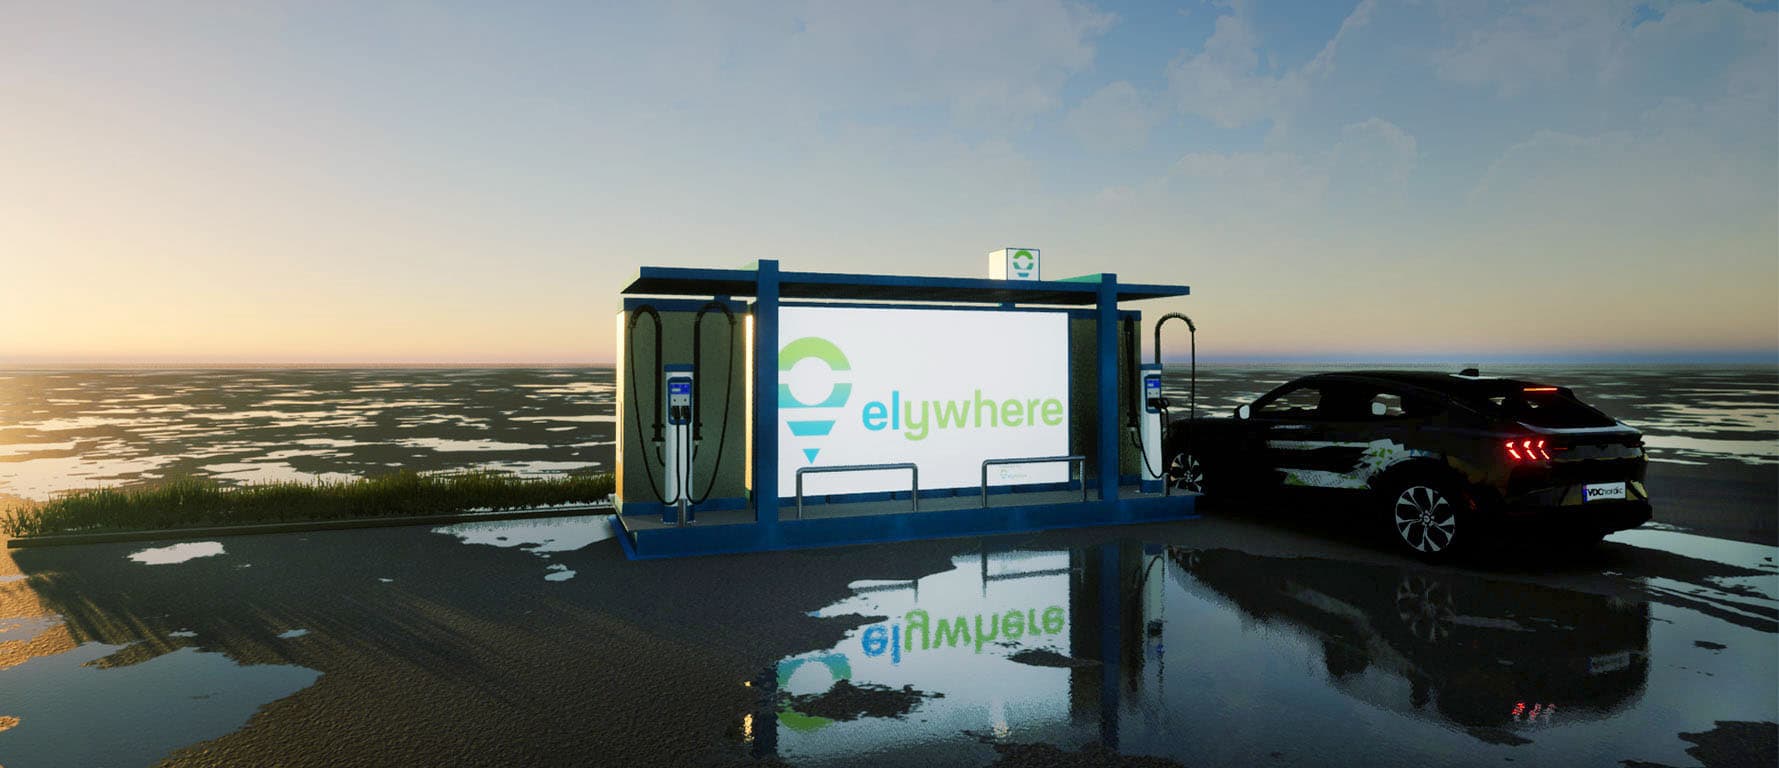 Gewerbespeicher, Elektroladestation an einem Parkplatz, im Hintergrund Watt, Foto: elywhere.com